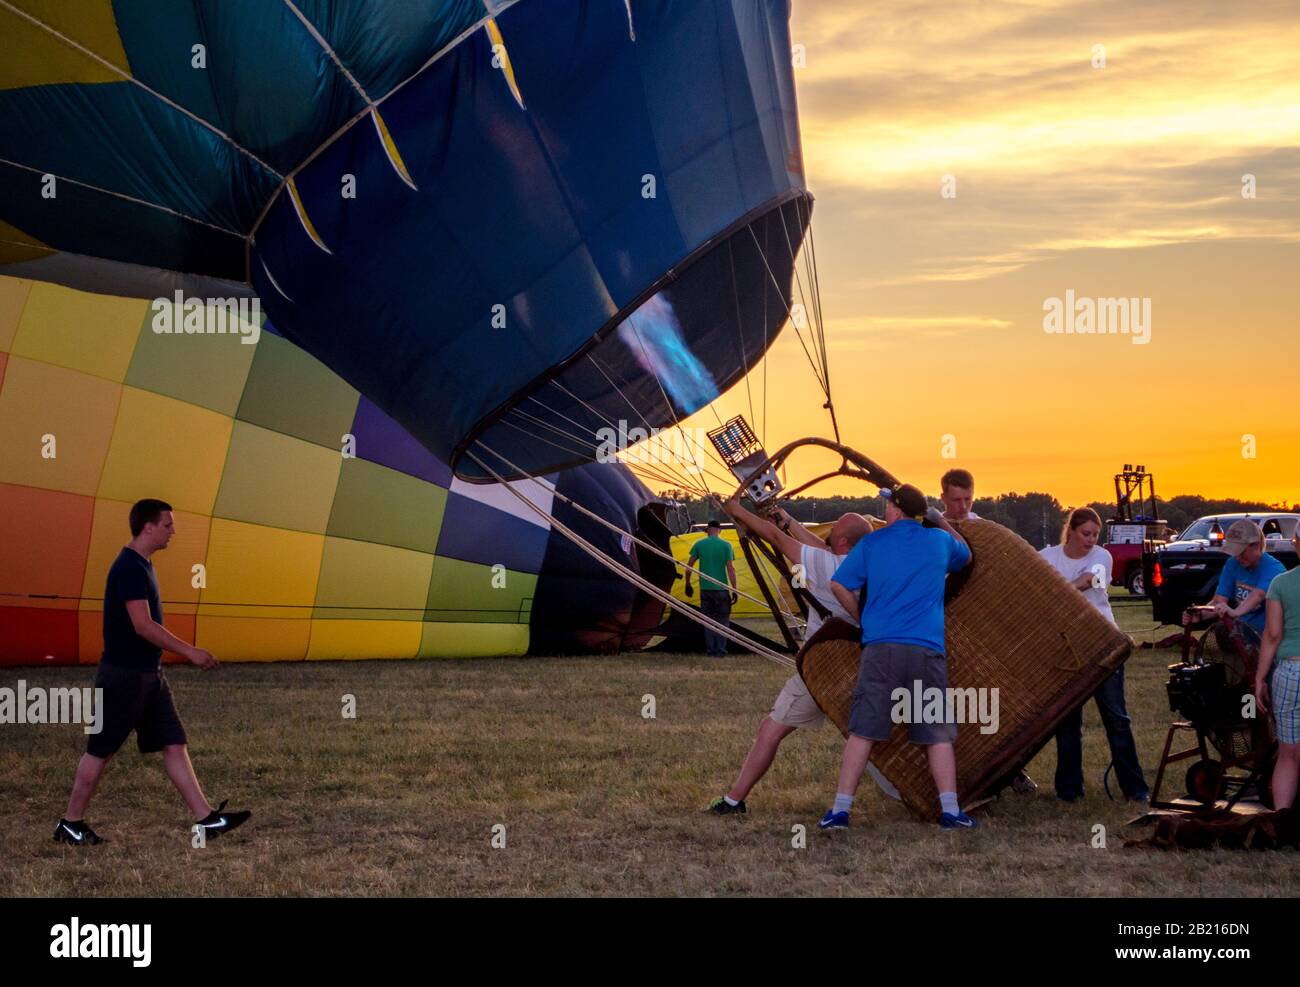 Battle Creek Michigan USA 3 luglio 2017; una squadra infiamma una mongolfiera con il fuoco mentre il sole tramonta durante uno spettacolo aereo Foto Stock